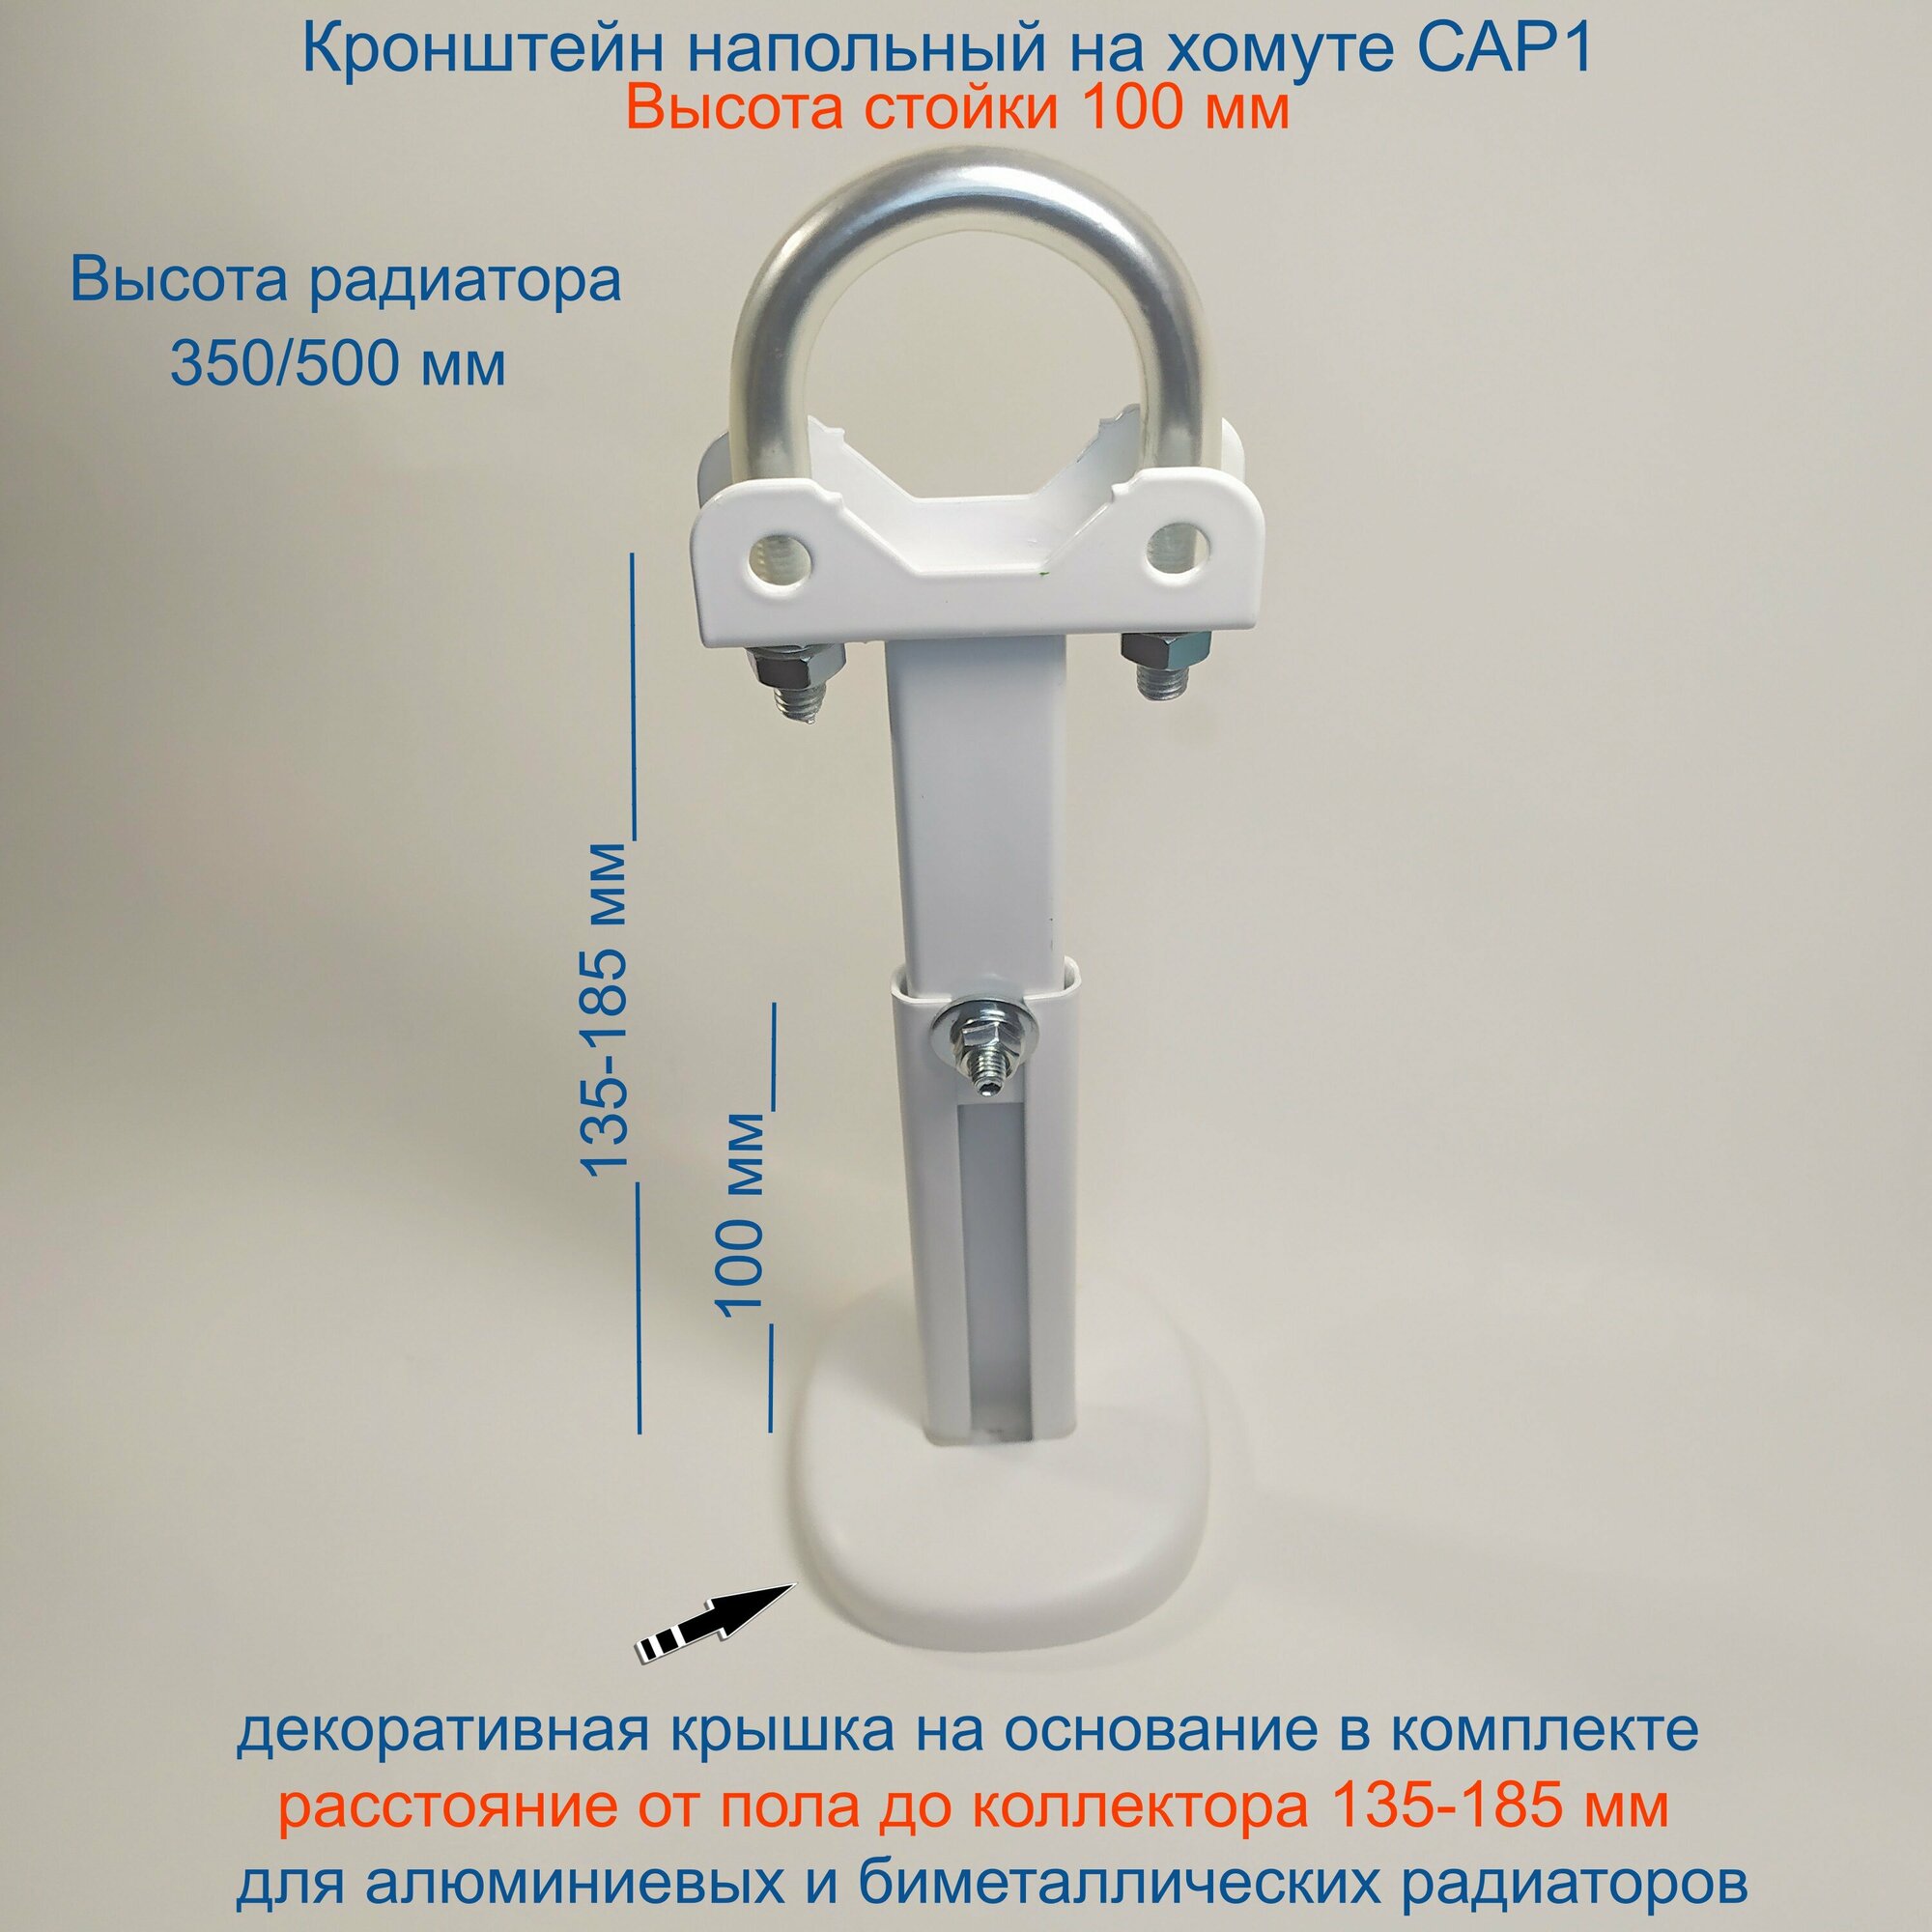 Кронштейн напольный регулируемый Кайрос САР1 на хомуте (стойка 100 мм) для алюм и биметалл радиаторов